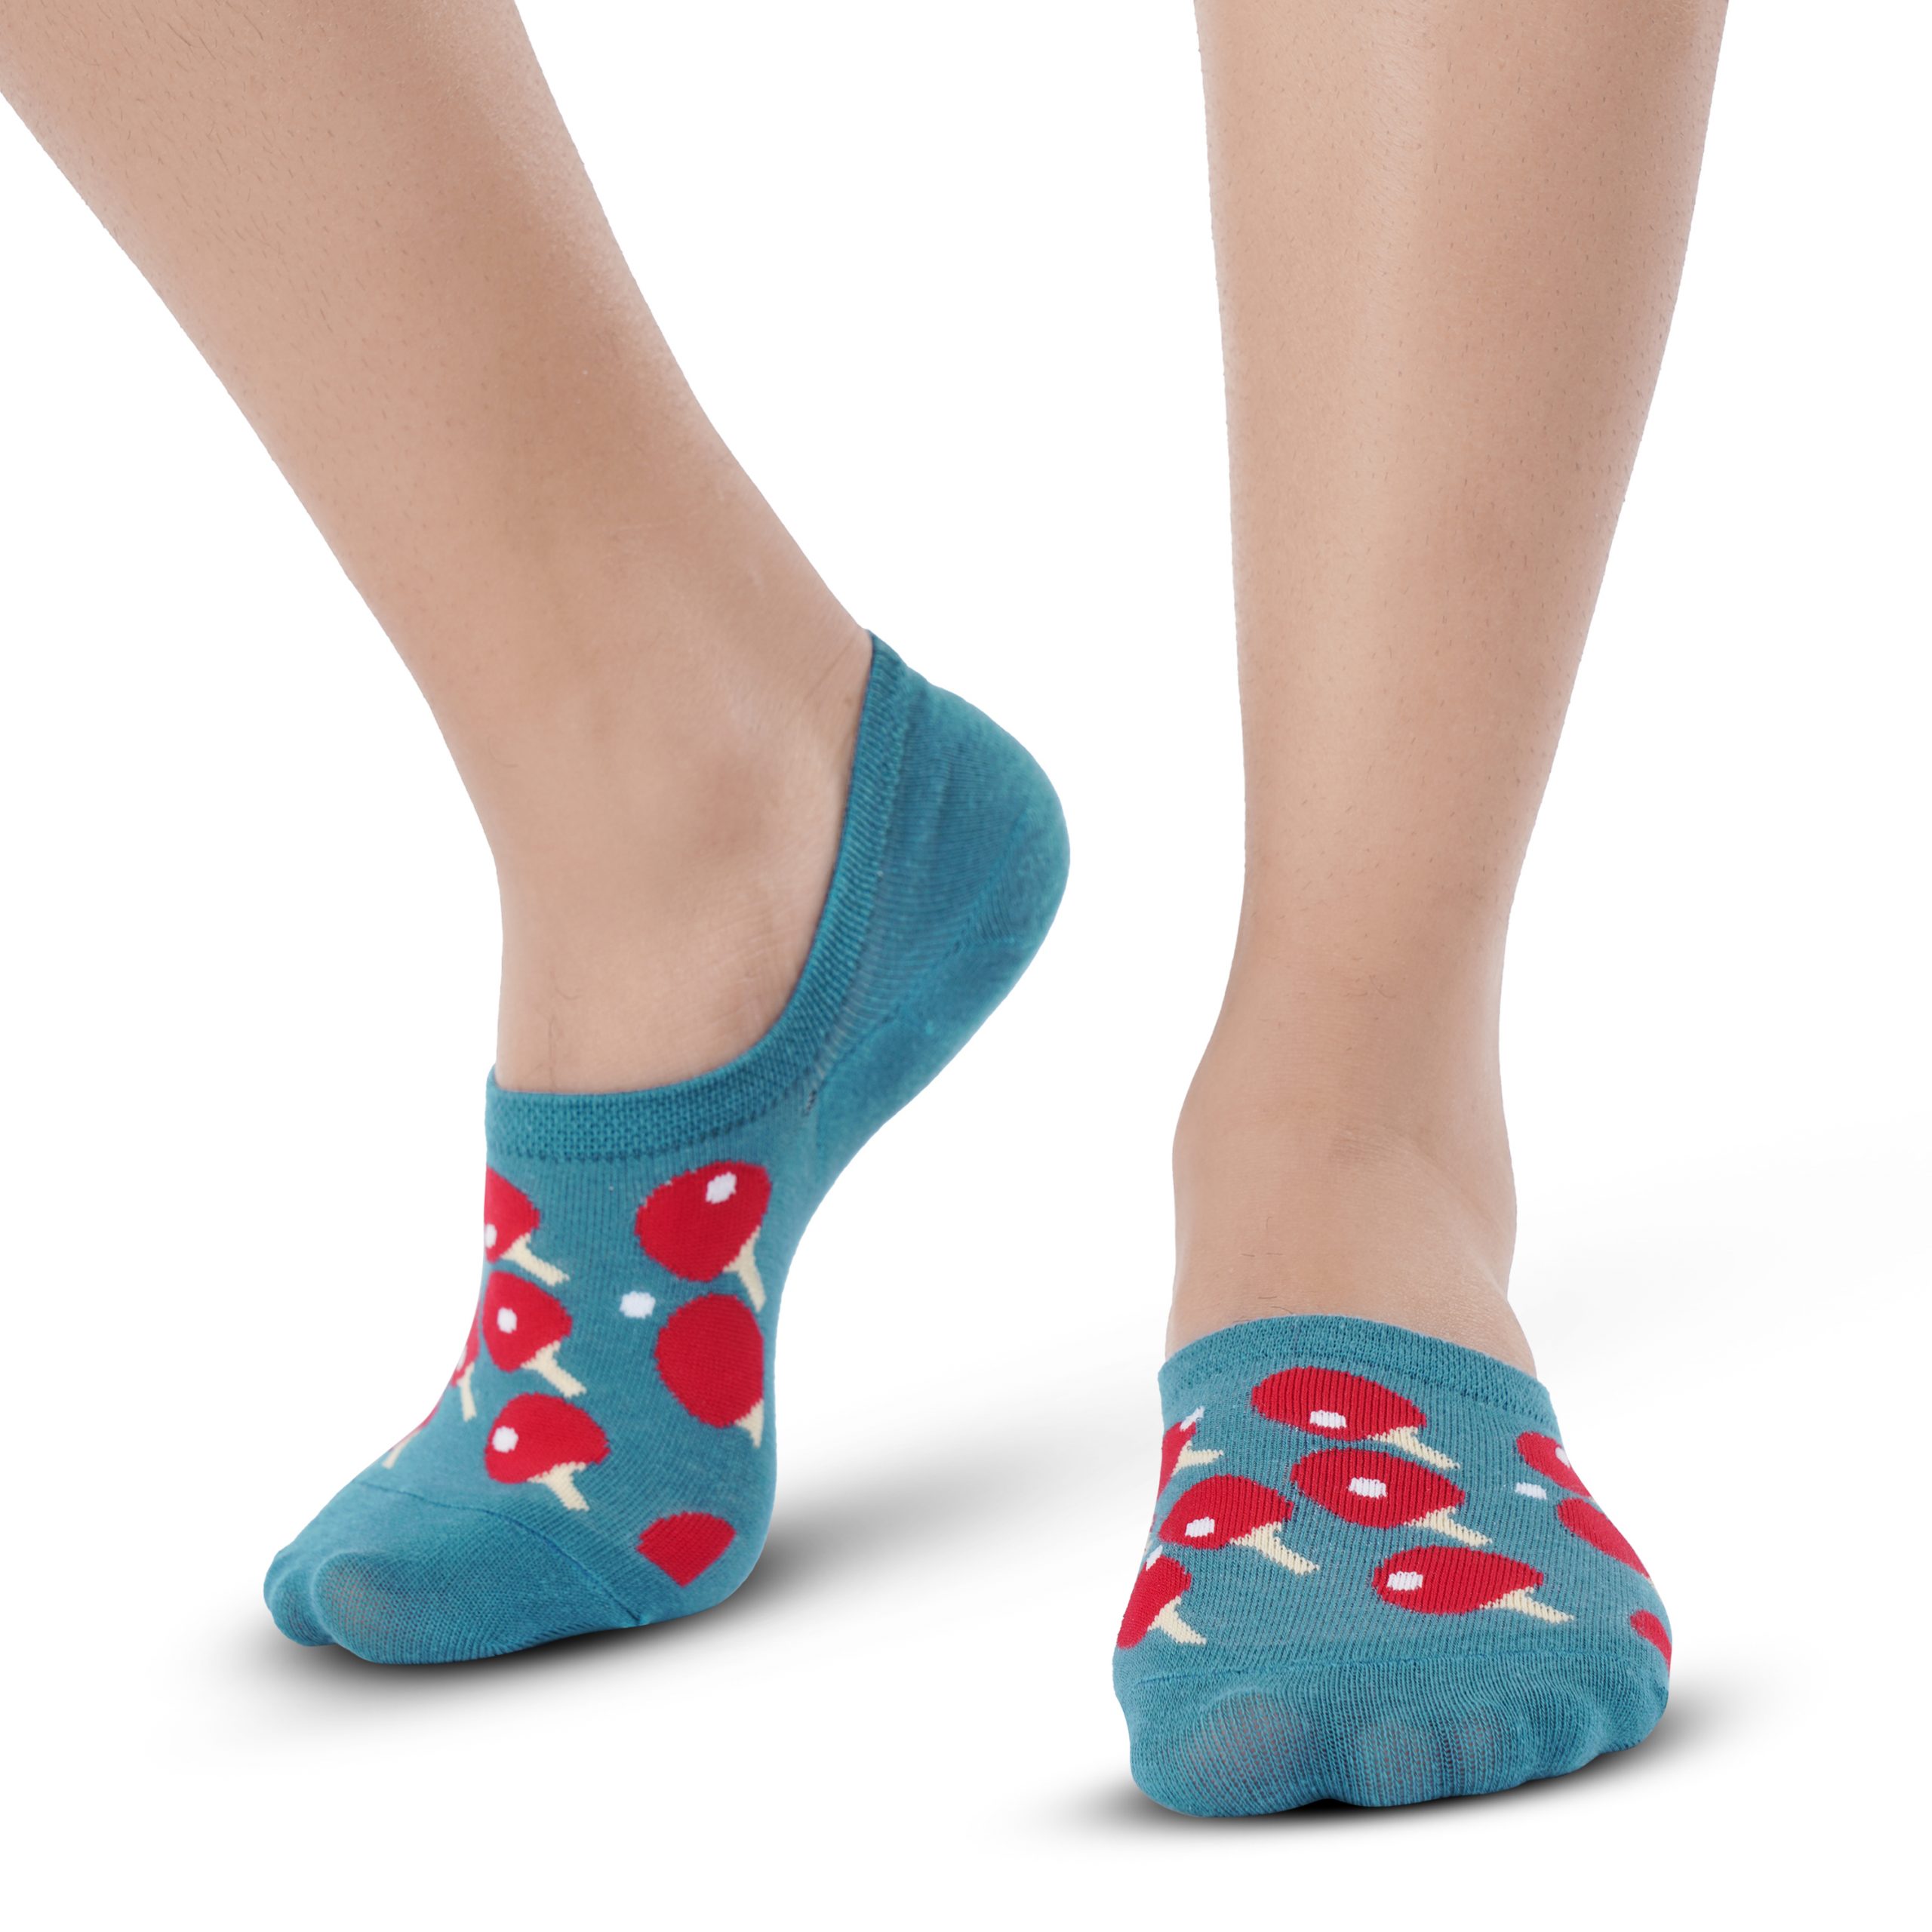 Albury: Blue & Red TT Ankle Socks